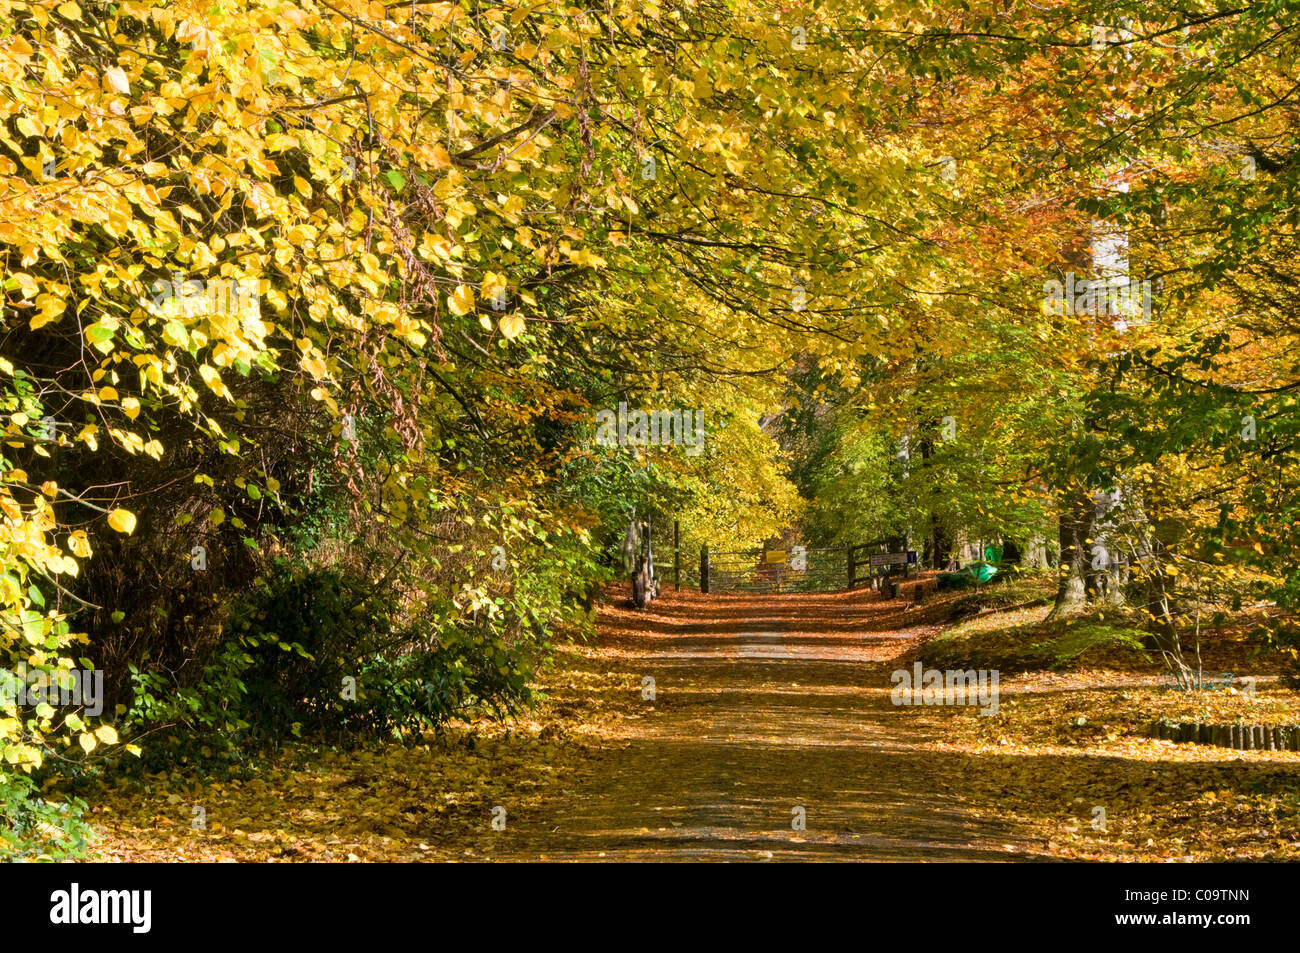 Route bordée de hêtres spectaculaires en automne, Whitegate, Cheshire, England, UK Banque D'Images